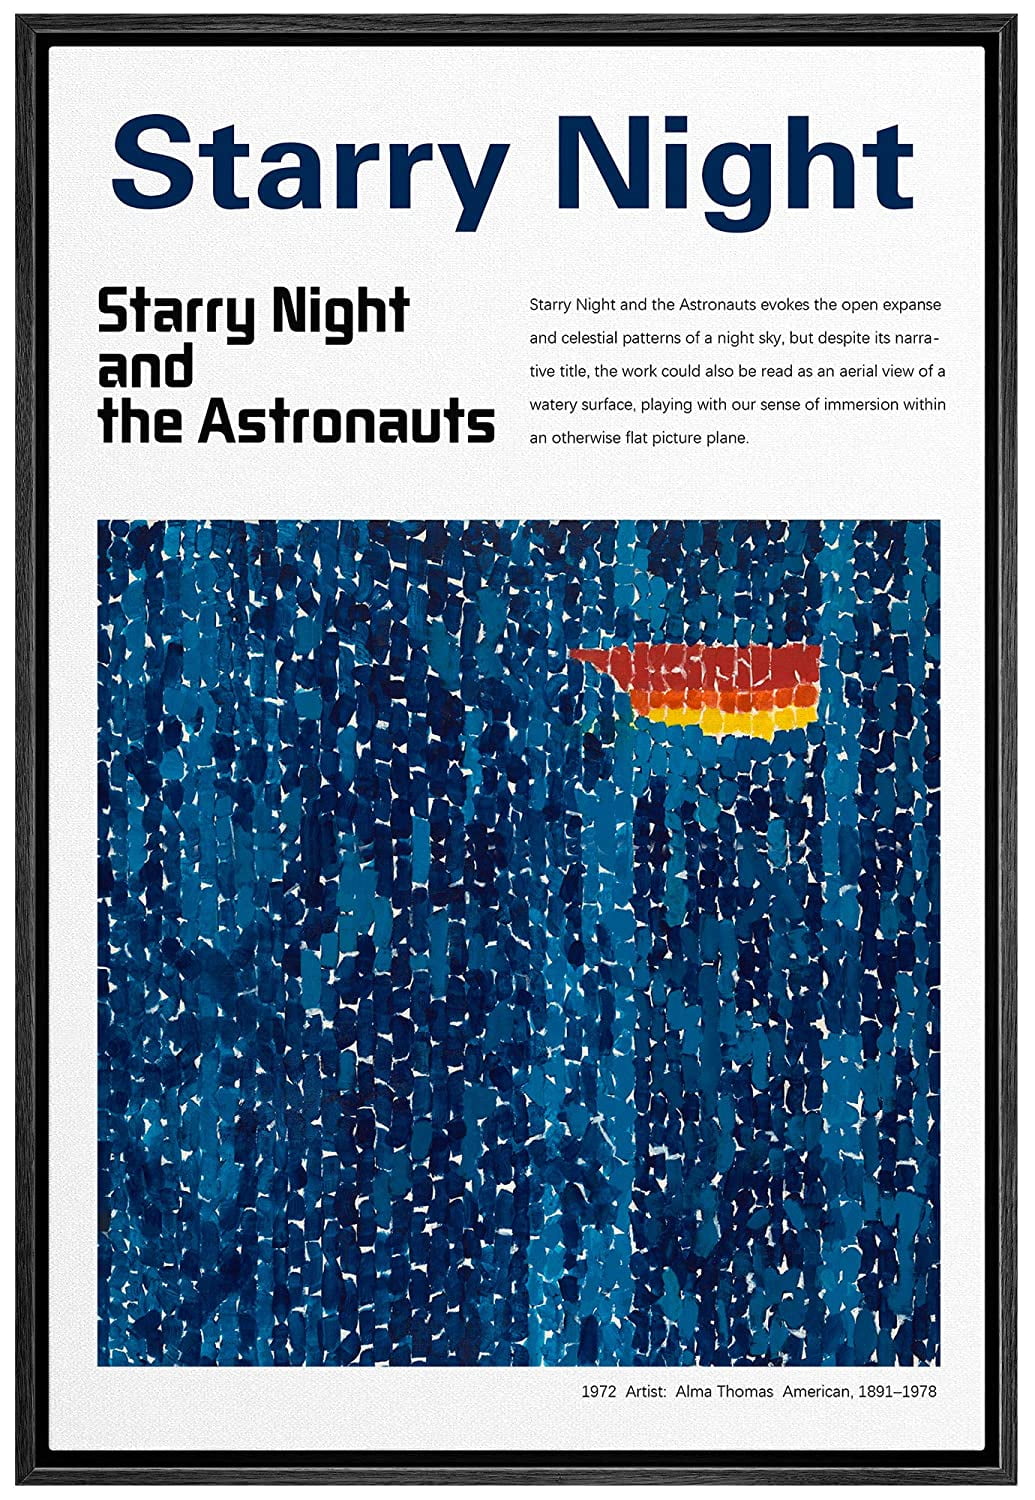 starry night pro plus 6 windows 8